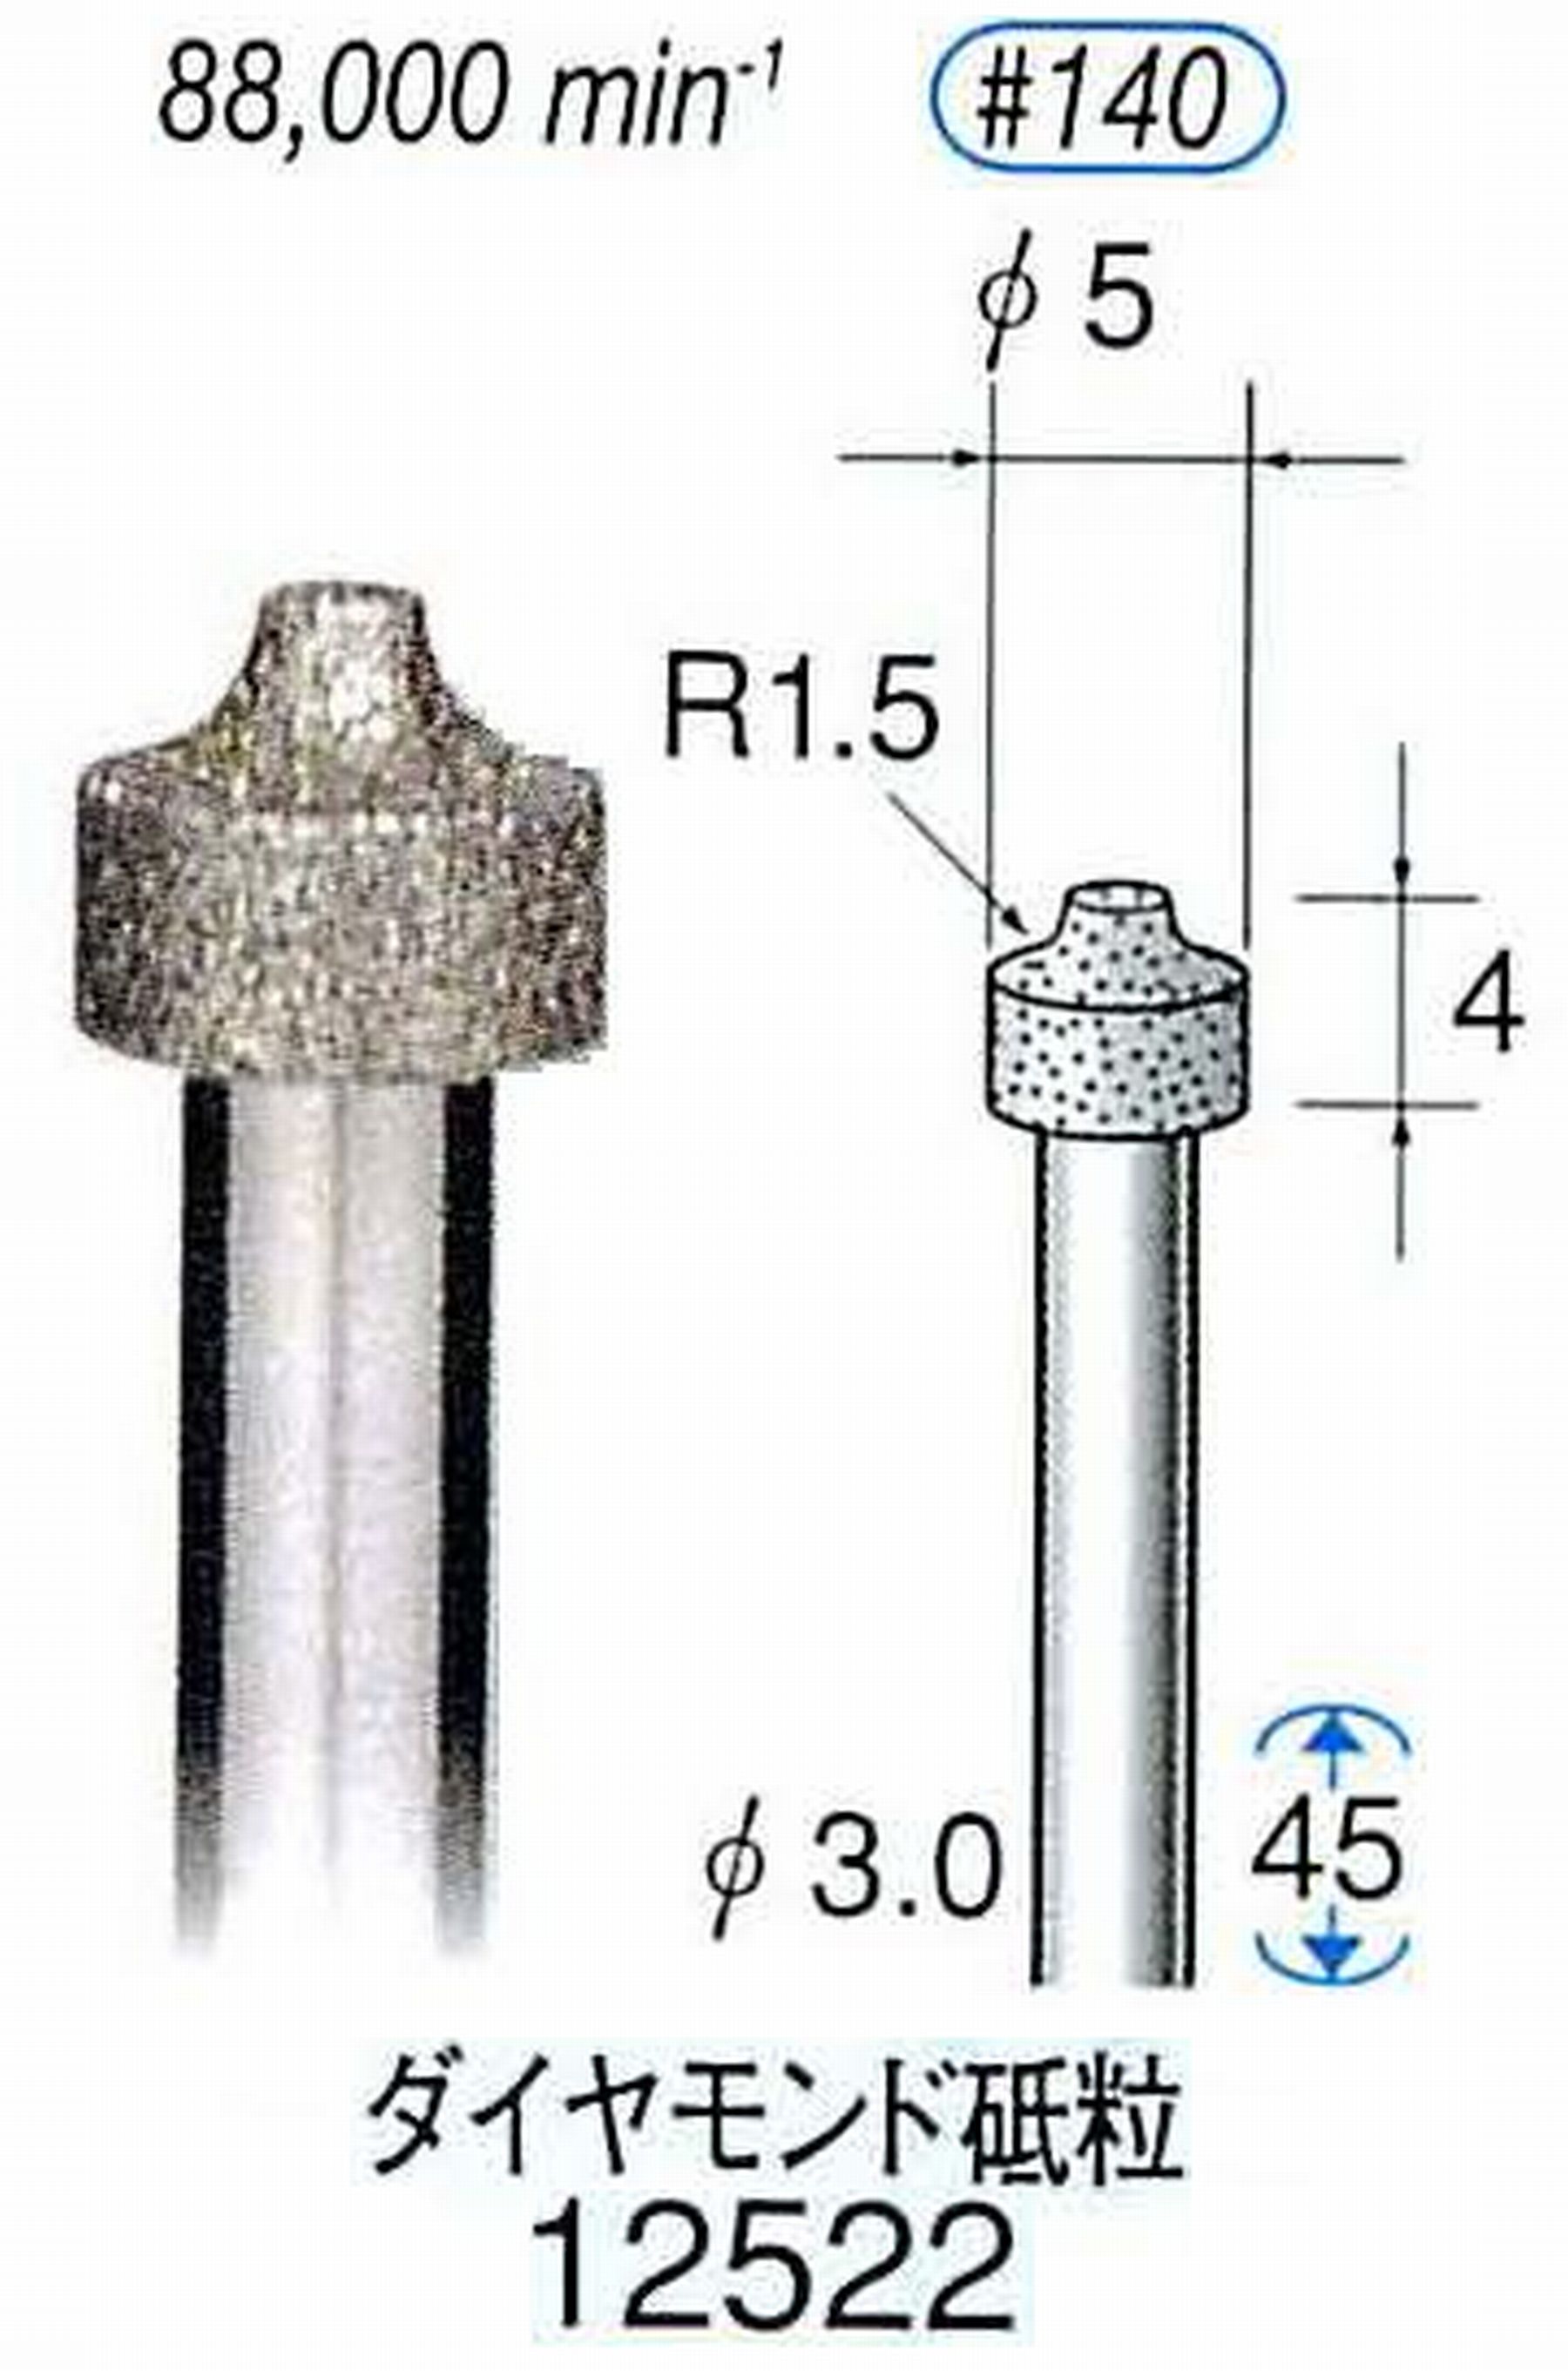 ナカニシ/NAKANISHI 電着ダイヤモンド ダイヤモンド砥粒 軸径(シャンク)φ3.0mm 12522